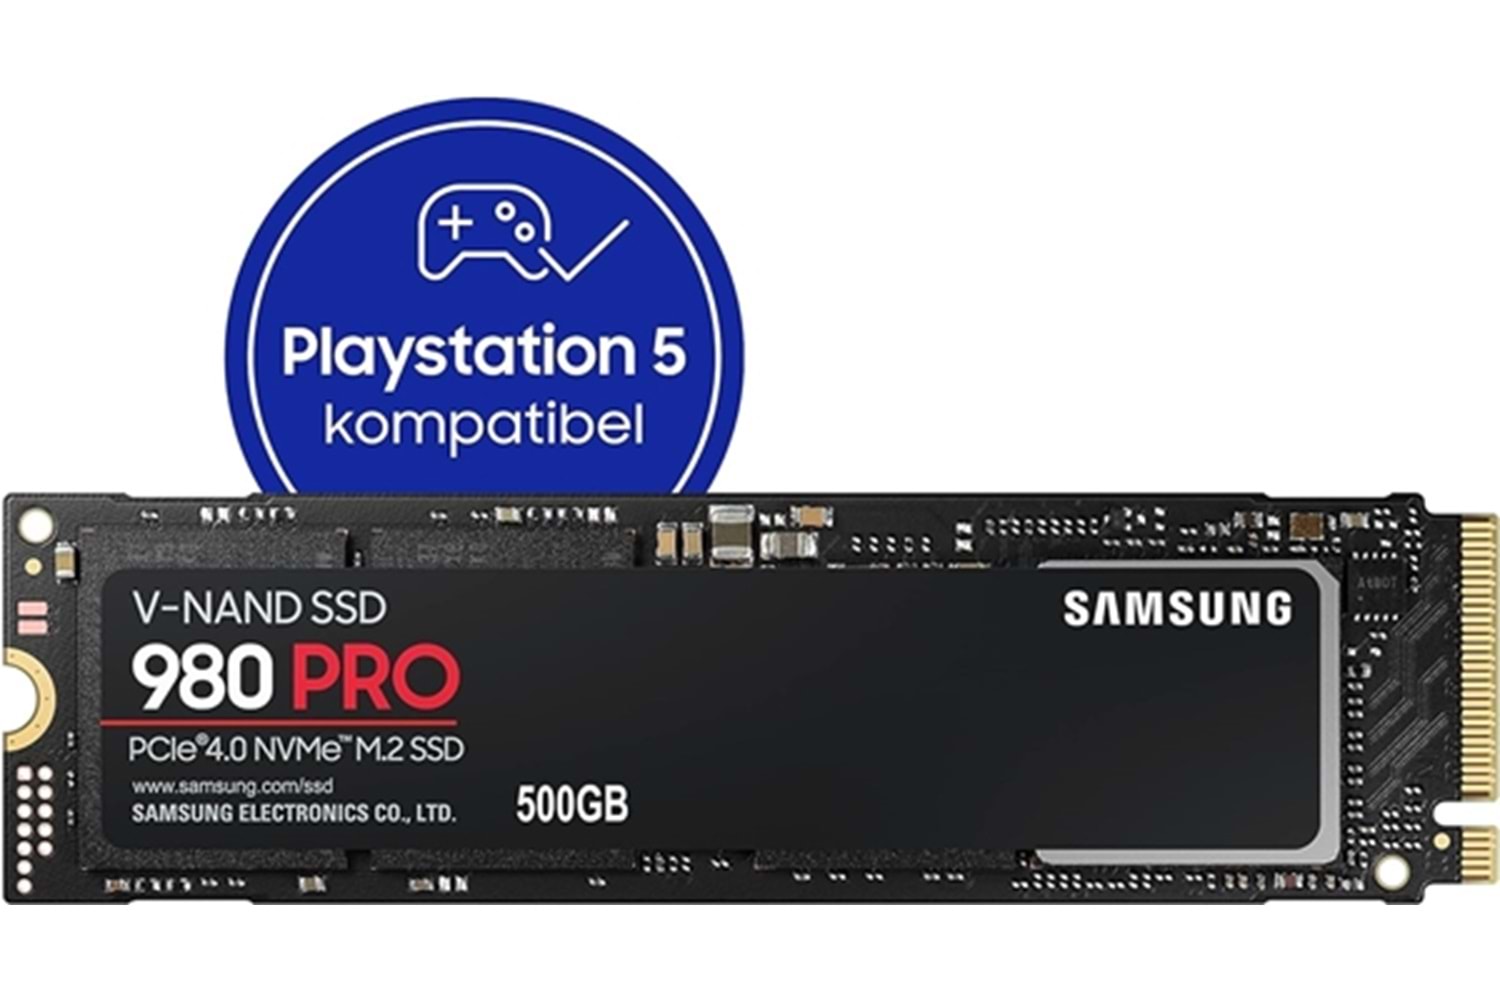 Samsung 980 PRO SSD 500GB M.2 2280 PCIe Gen 4.0 SSD 6900/5000MB/s MZ-V8P500BW